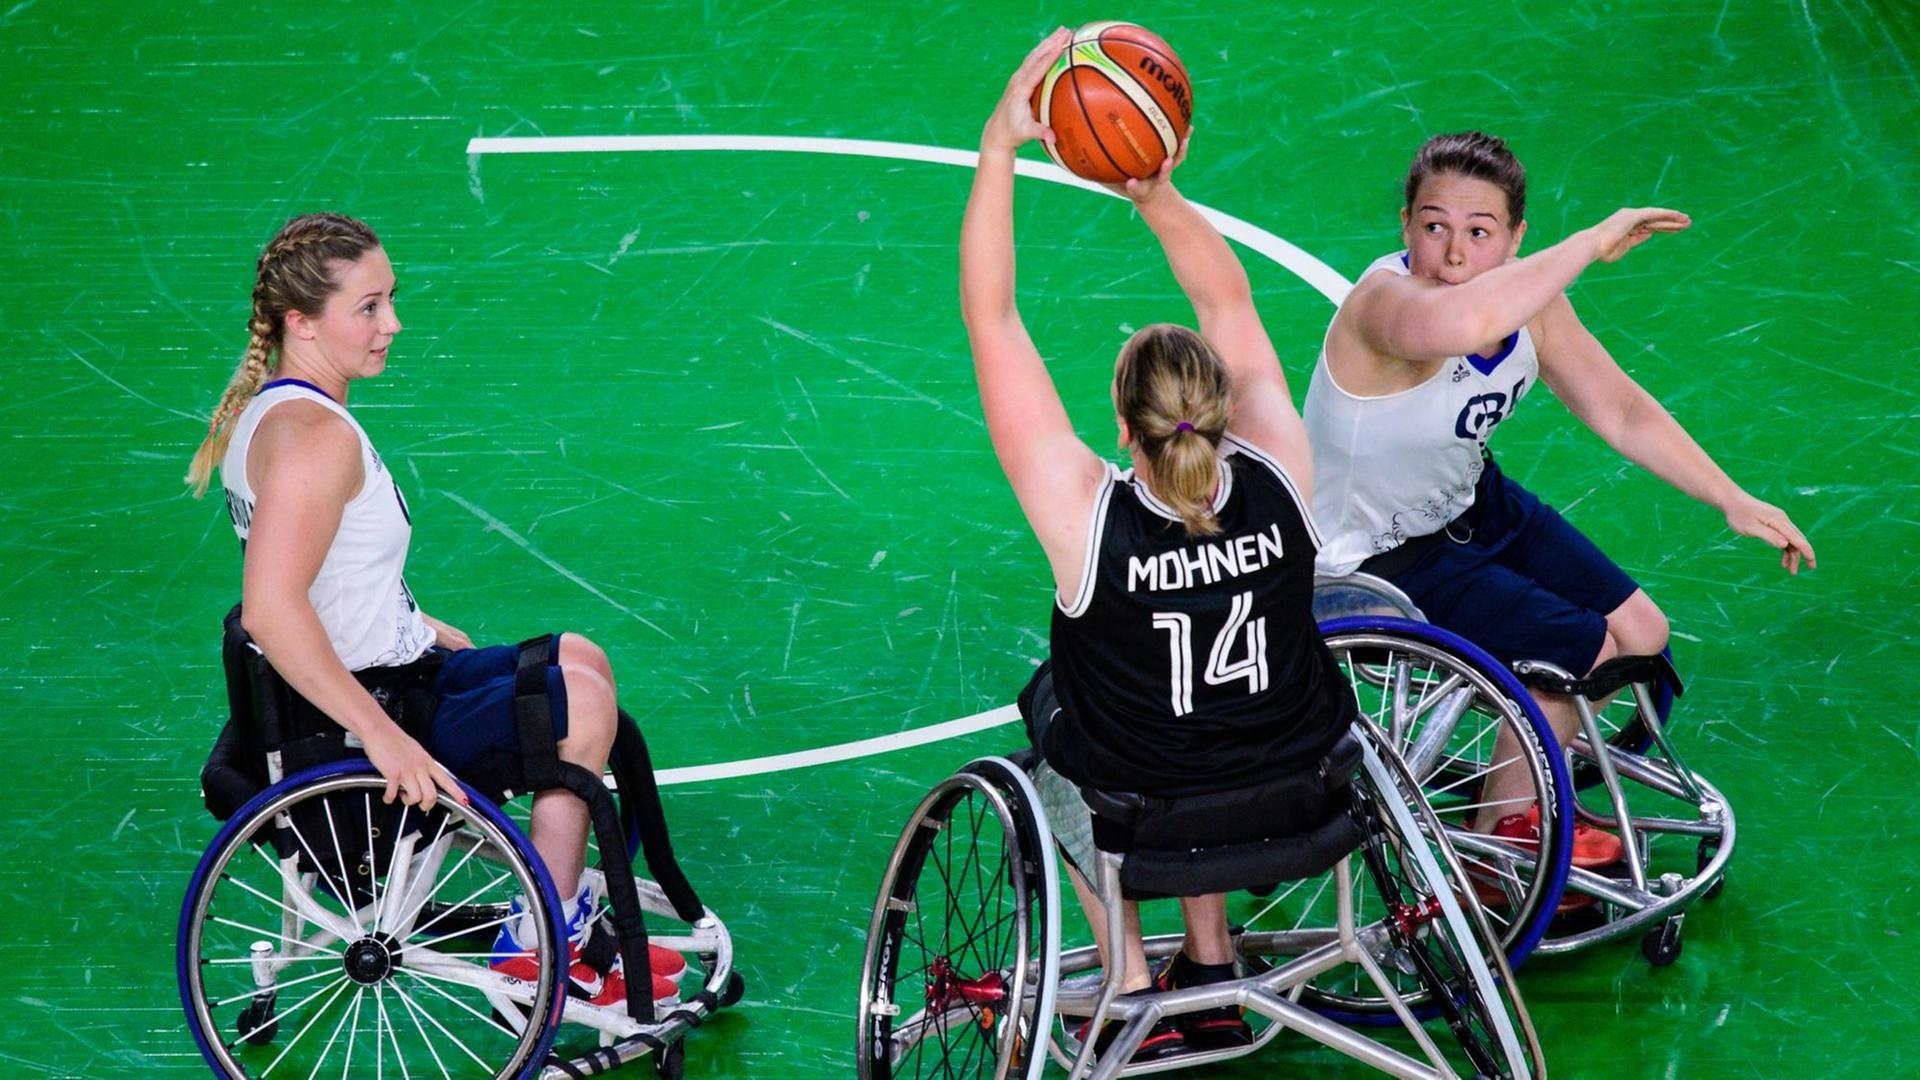 Rollstuhl-Basketball: Deutschland (GER) vs. Großbritannien / Grossbritannien, ein Zweikampf zwischen Sophie Carrigill und Marina Mohnen und Helen Freeman.